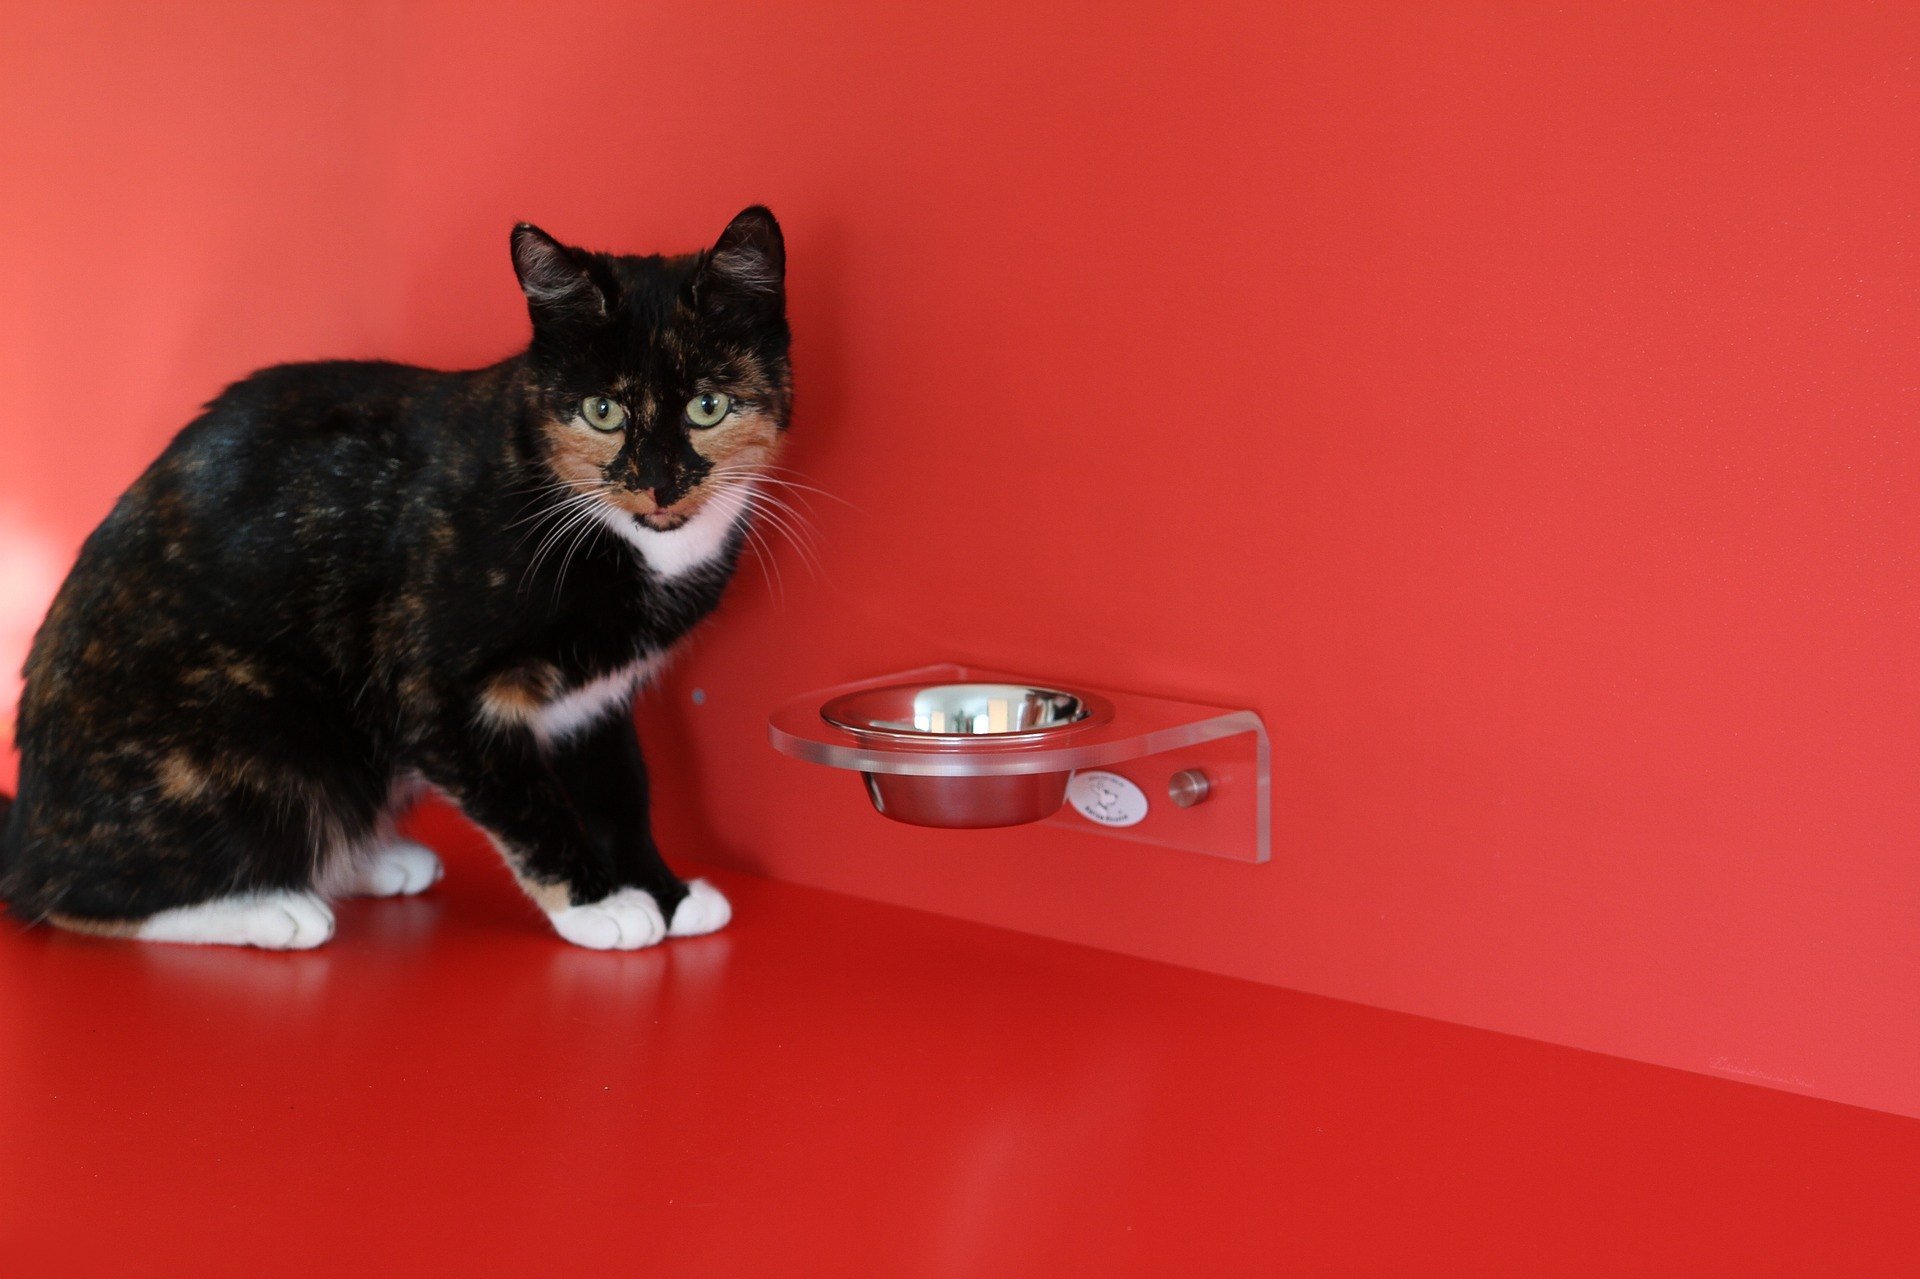 Dieta BARF este considerata de unii cel mai natural mod de nutritie pentru pisica. Insa are si adversari.